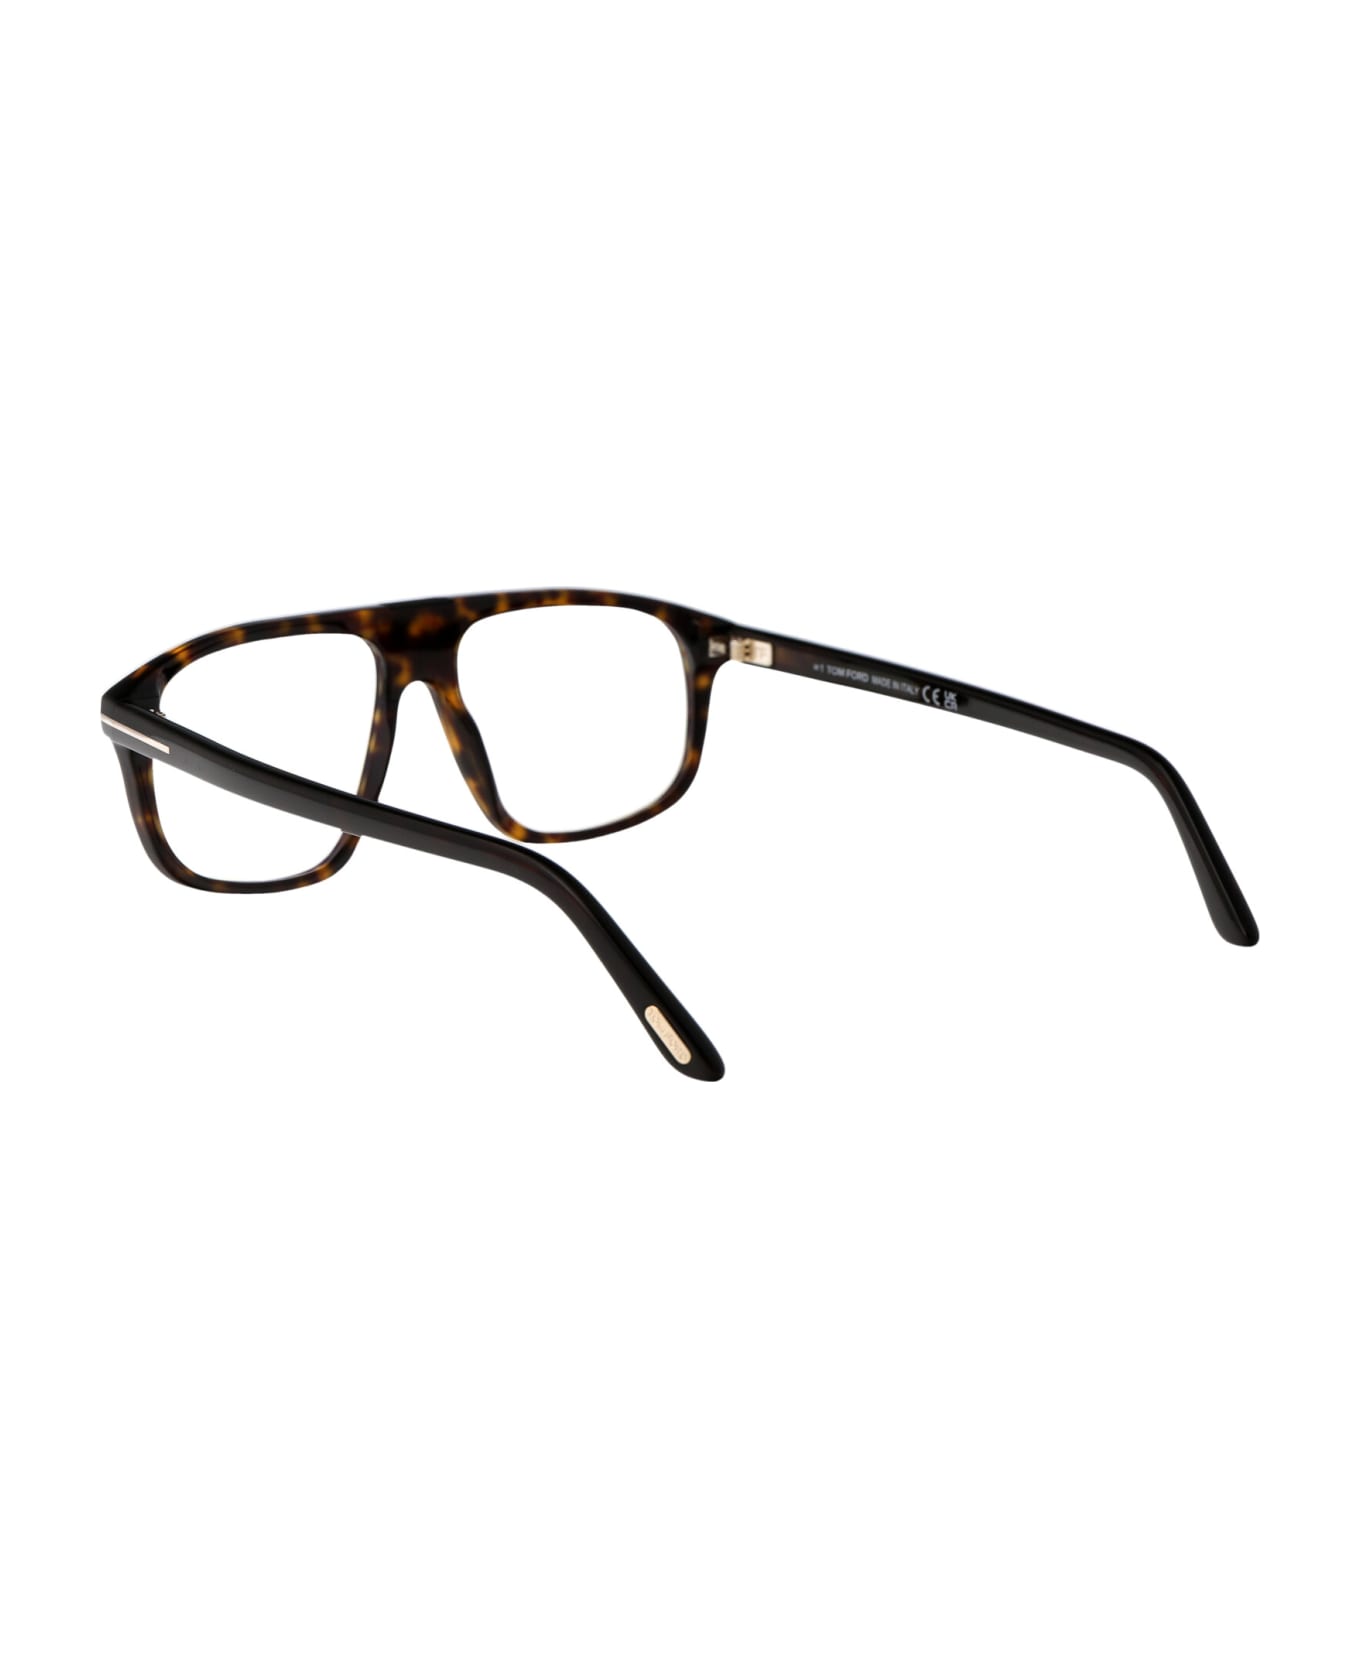 Tom Ford Eyewear Ft5901-b Glasses - 052 Avana Scura アイウェア